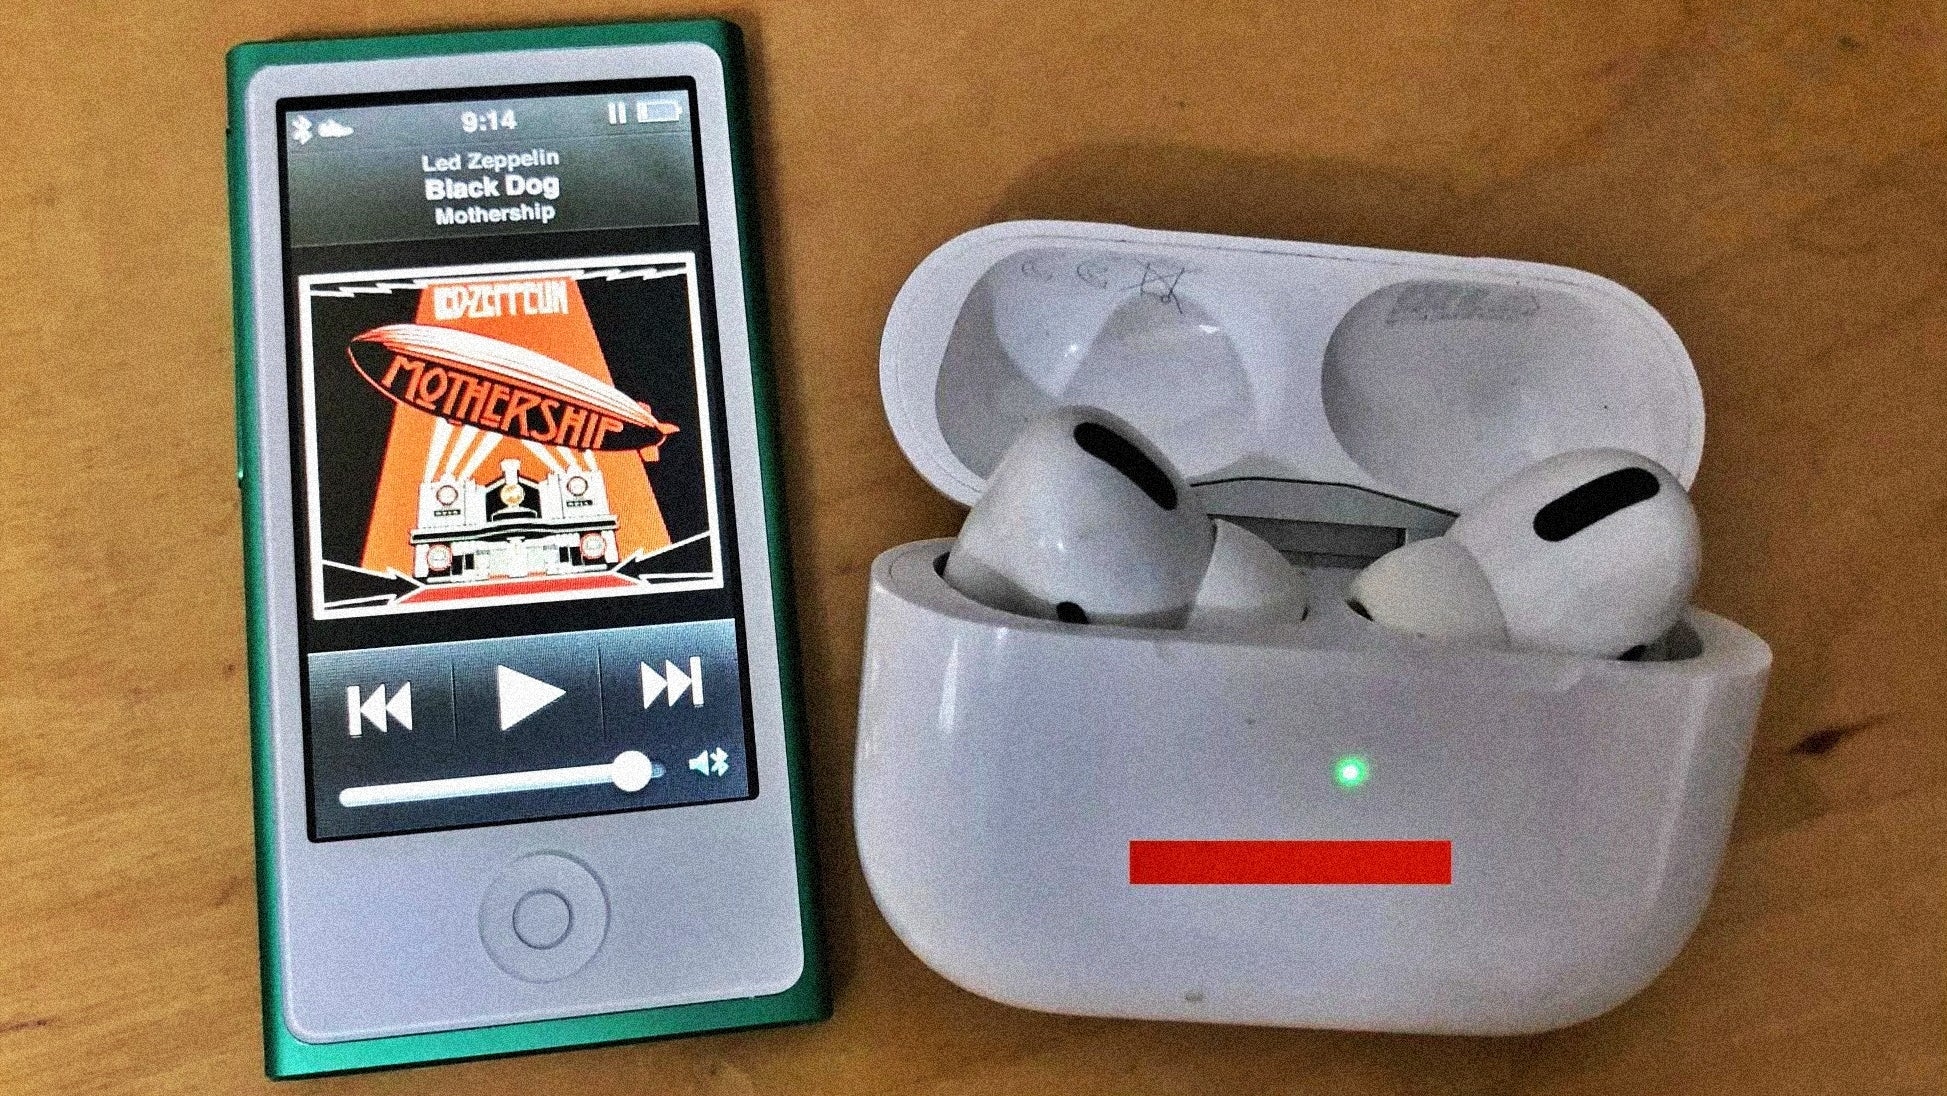 Os mais recentes iPods Nano de 7ª geração suportam Bluetooth e podem se conectar aos AirPods, mas não oferecem recursos de streaming, o que os torna obsoletos. - AirPods nano: o futuro dos fones de ouvido sem fio é a razão principal para a Apple incorporar outro iPod